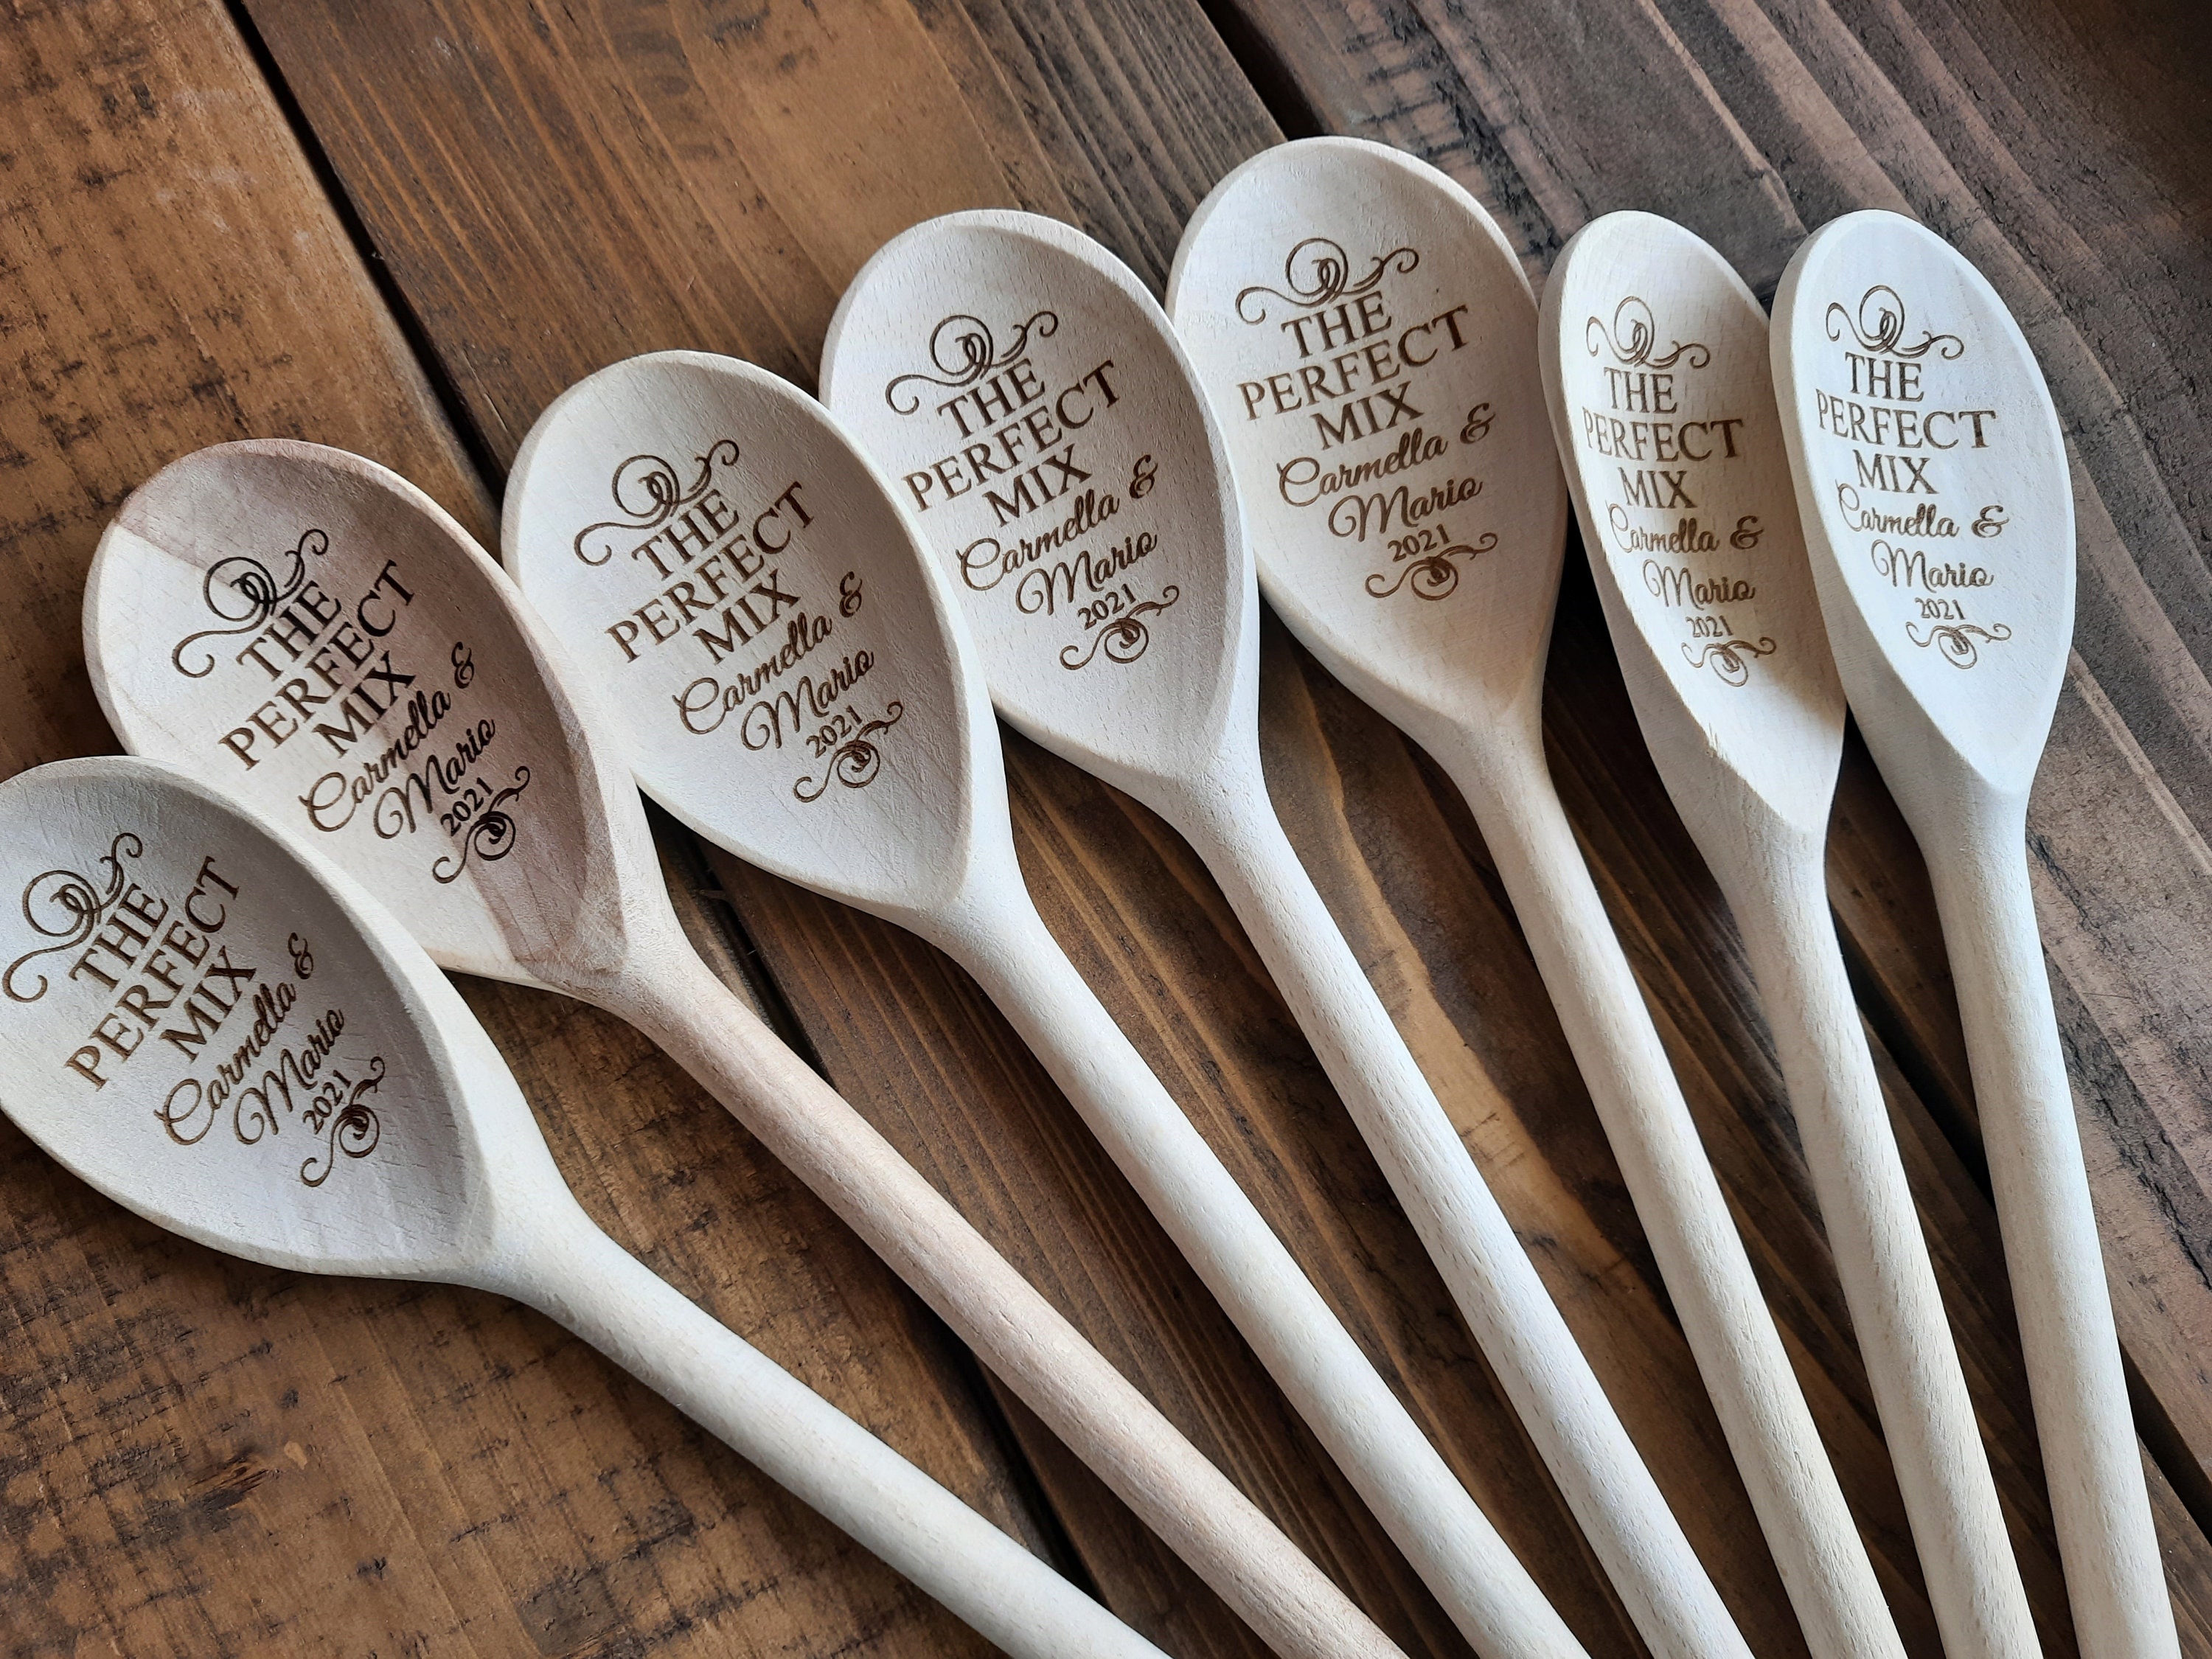 Wooden Spoons Bulk Outlets Online Save 60 Jlcatjgobmx